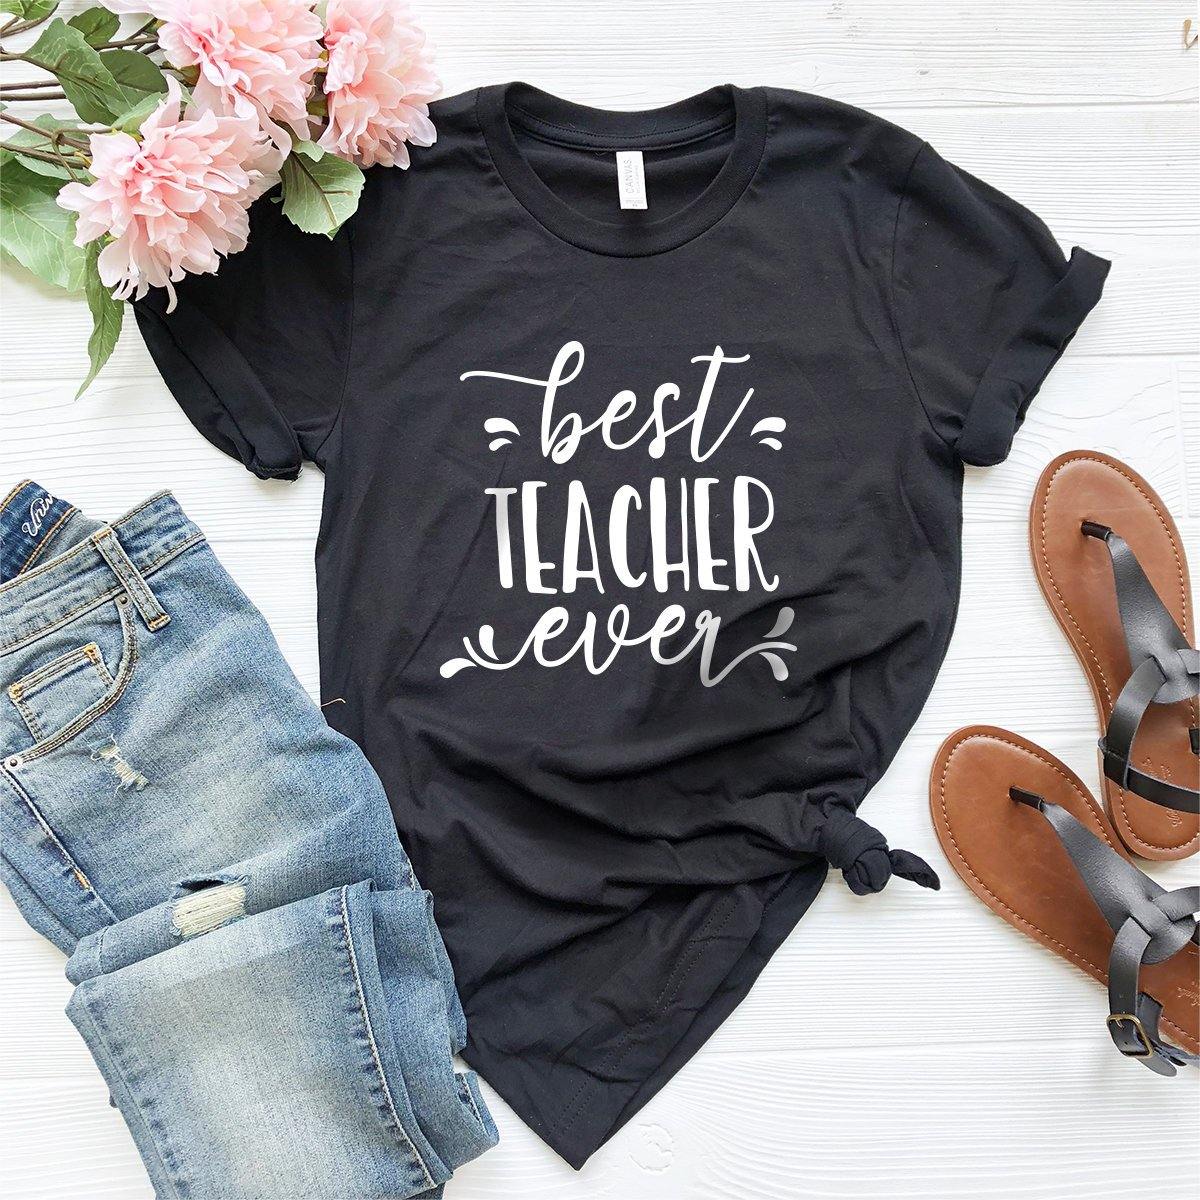 Best Teacher Ever Shirt, Favorite Teacher T-Shirt, Gift For Teacher, Teacher Shirt, Teacher Appreciation Shirt, Custom Teacher Tee - Fastdeliverytees.com